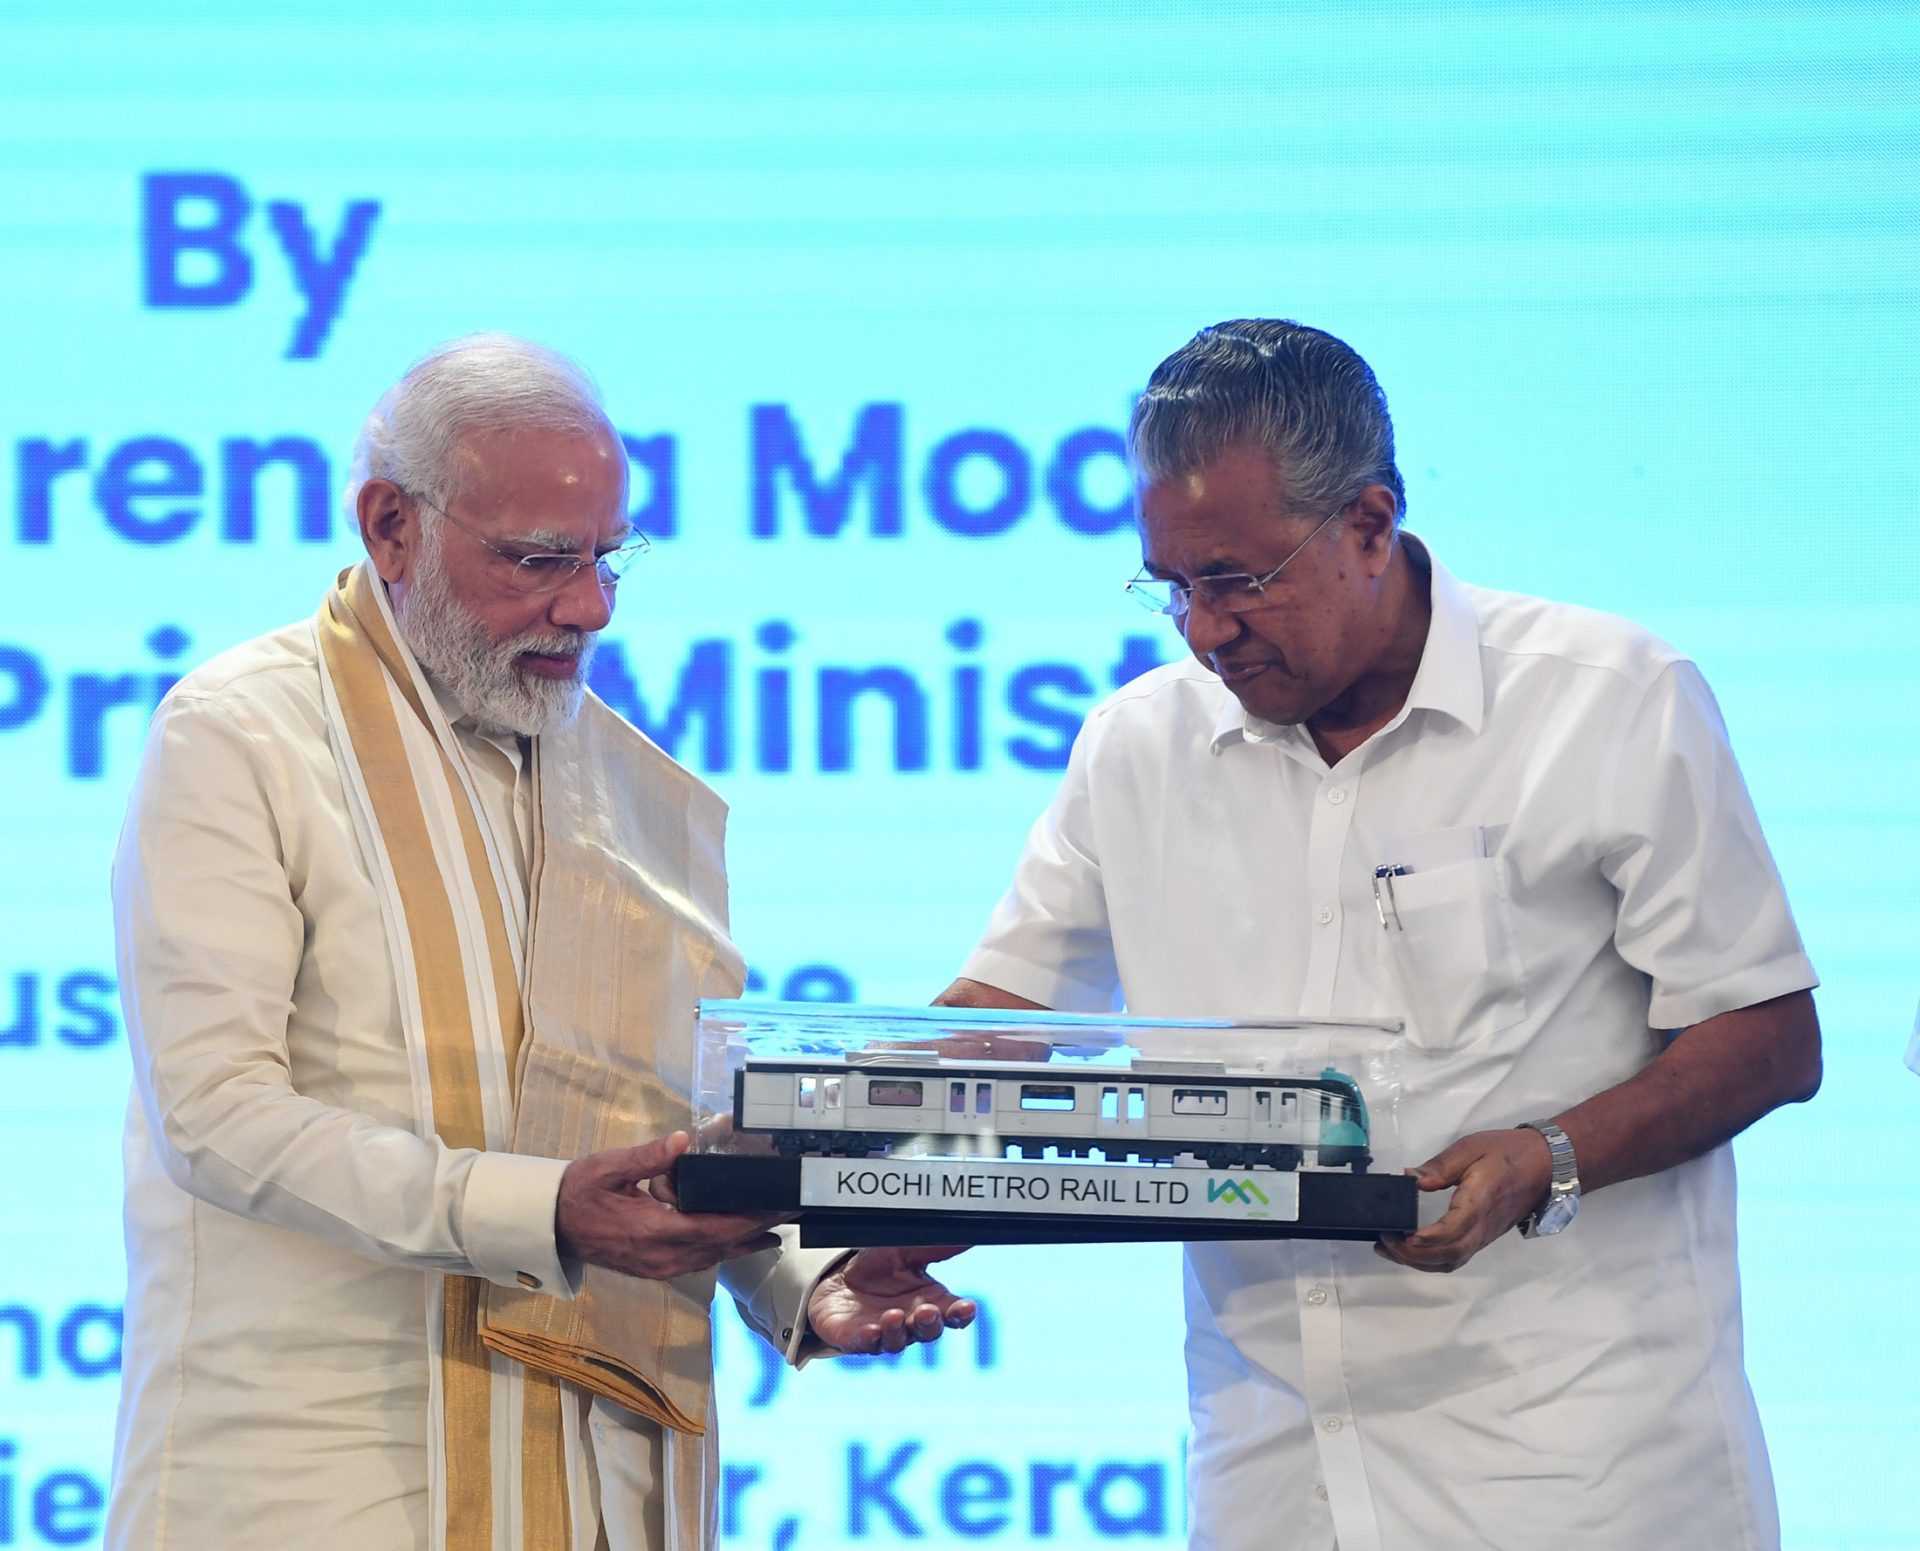 पंतप्रधान नरेंद्र मोदी यांच्या हस्ते कोची मेट्रो आणि भारतीय रेल्वेच्या 4,500 कोटींपेक्षा अधिक खर्चाच्या विविध प्रकल्पांची पायाभरणी आणि लोकार्पण